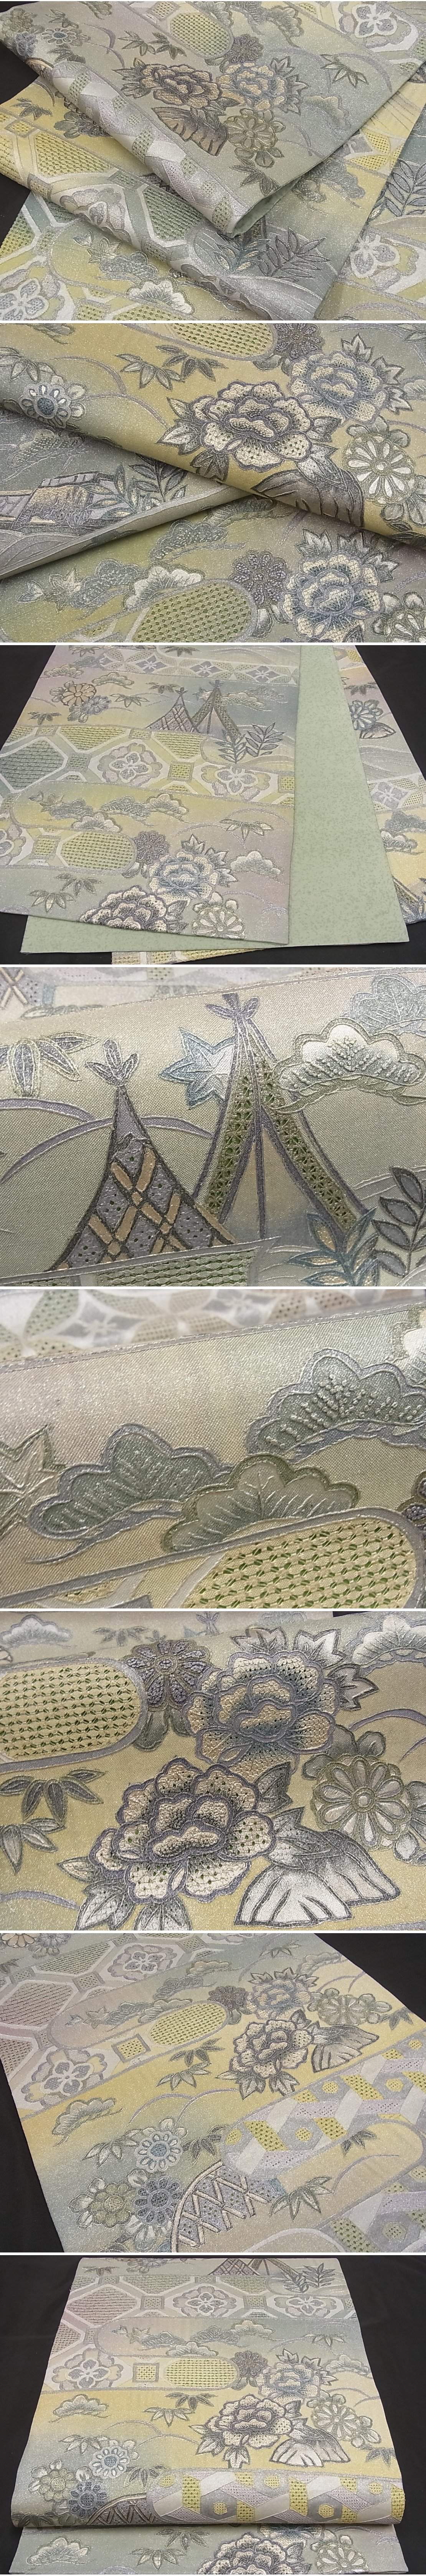 汕頭刺繍 スワトウ 相良刺繍 花鳥の図 錆納戸色 多色 金 袋帯 A776